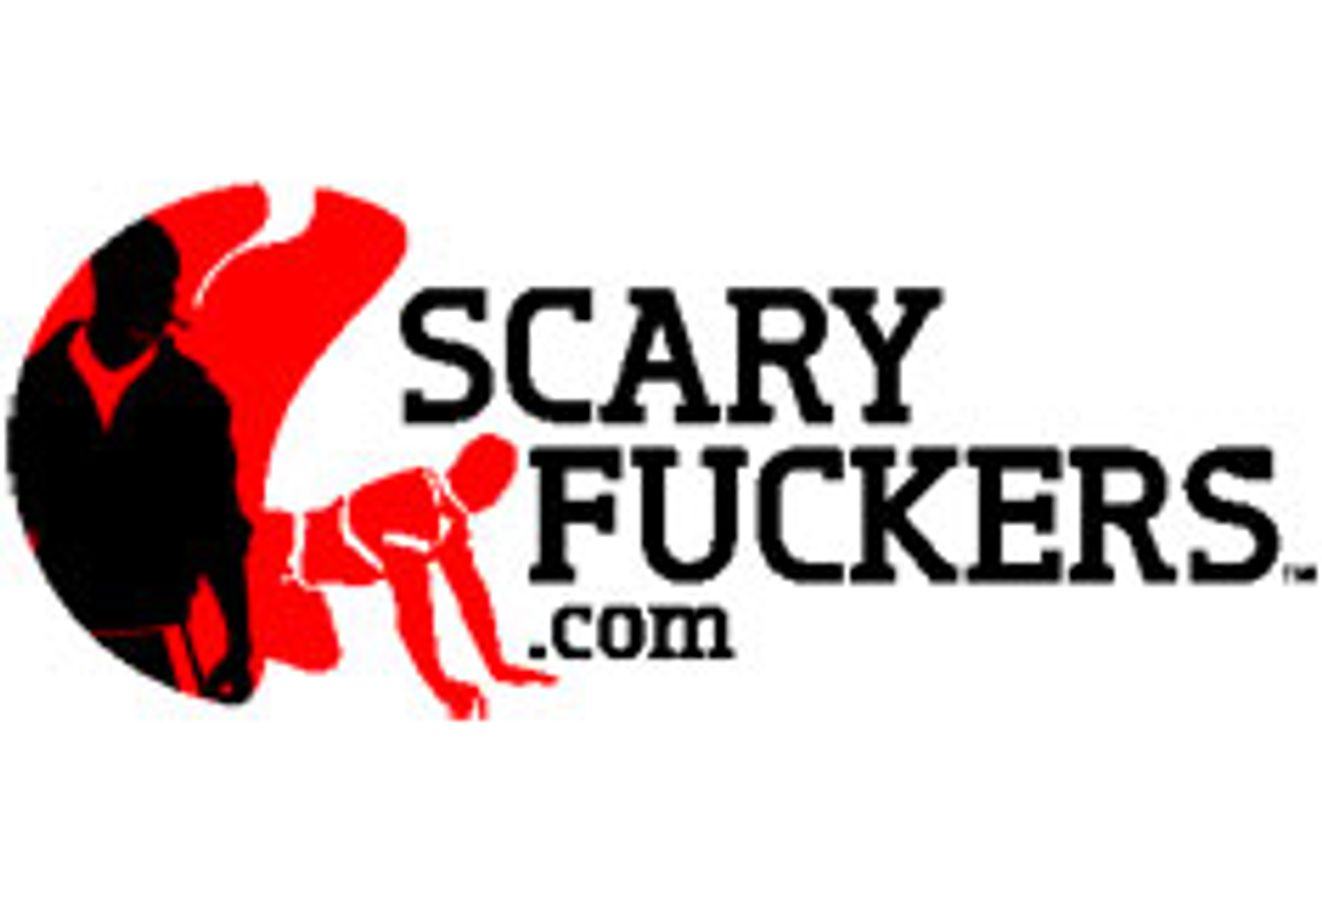 ScaryFuckers.com